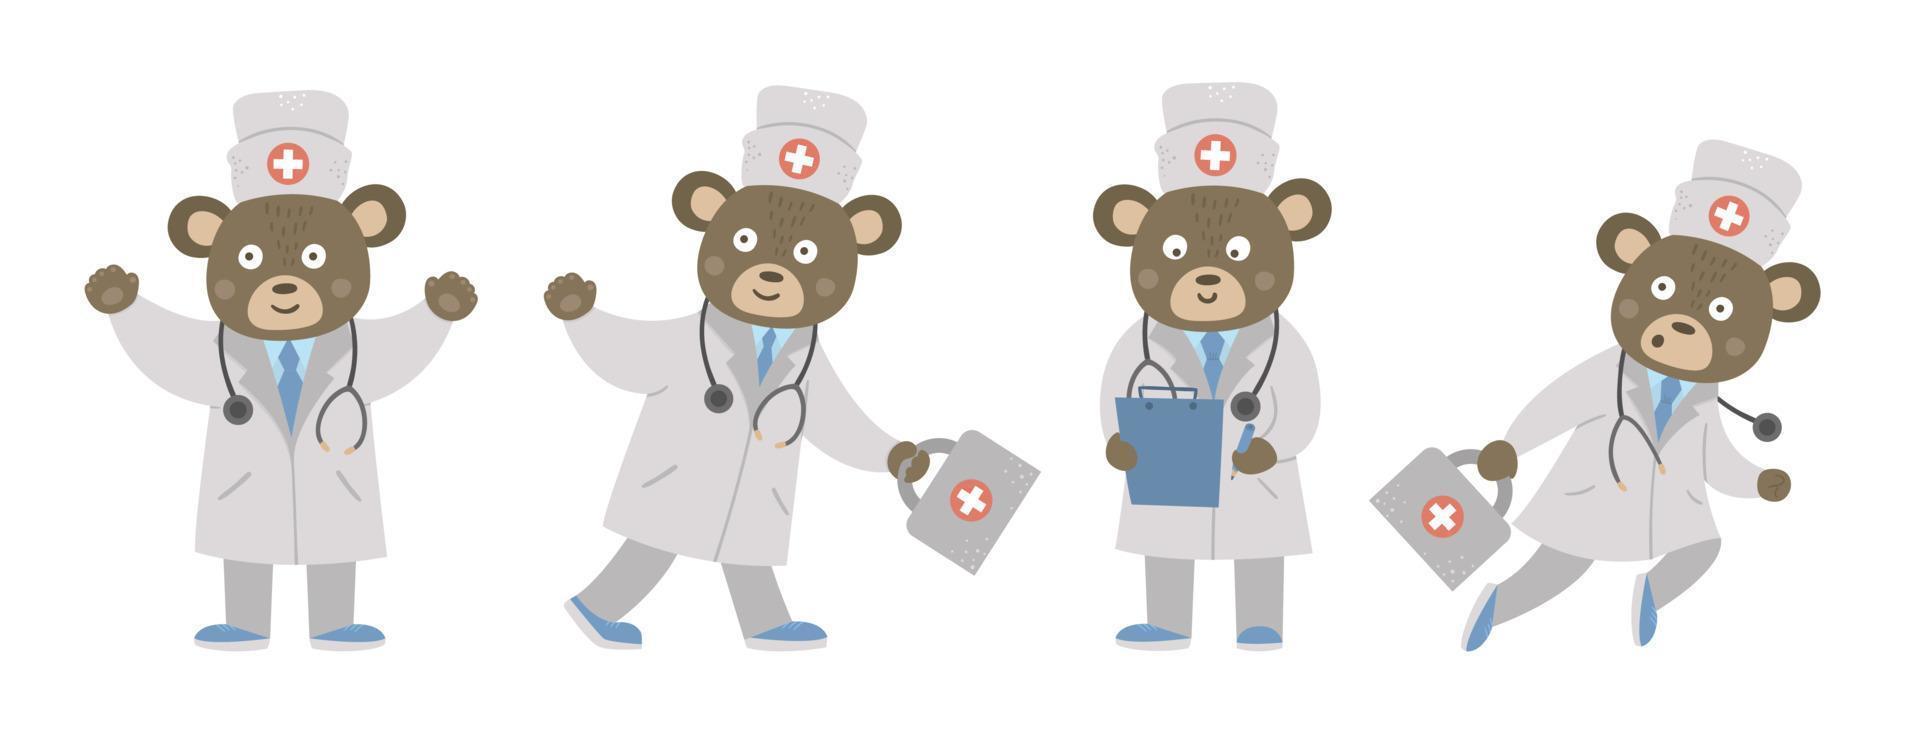 set van vector beer artsen in medische hoed met stethoscoop. leuk grappig dierlijk karakter. medicijn foto voor kinderen. gezondheidszorg pictogram geïsoleerd op een witte achtergrond